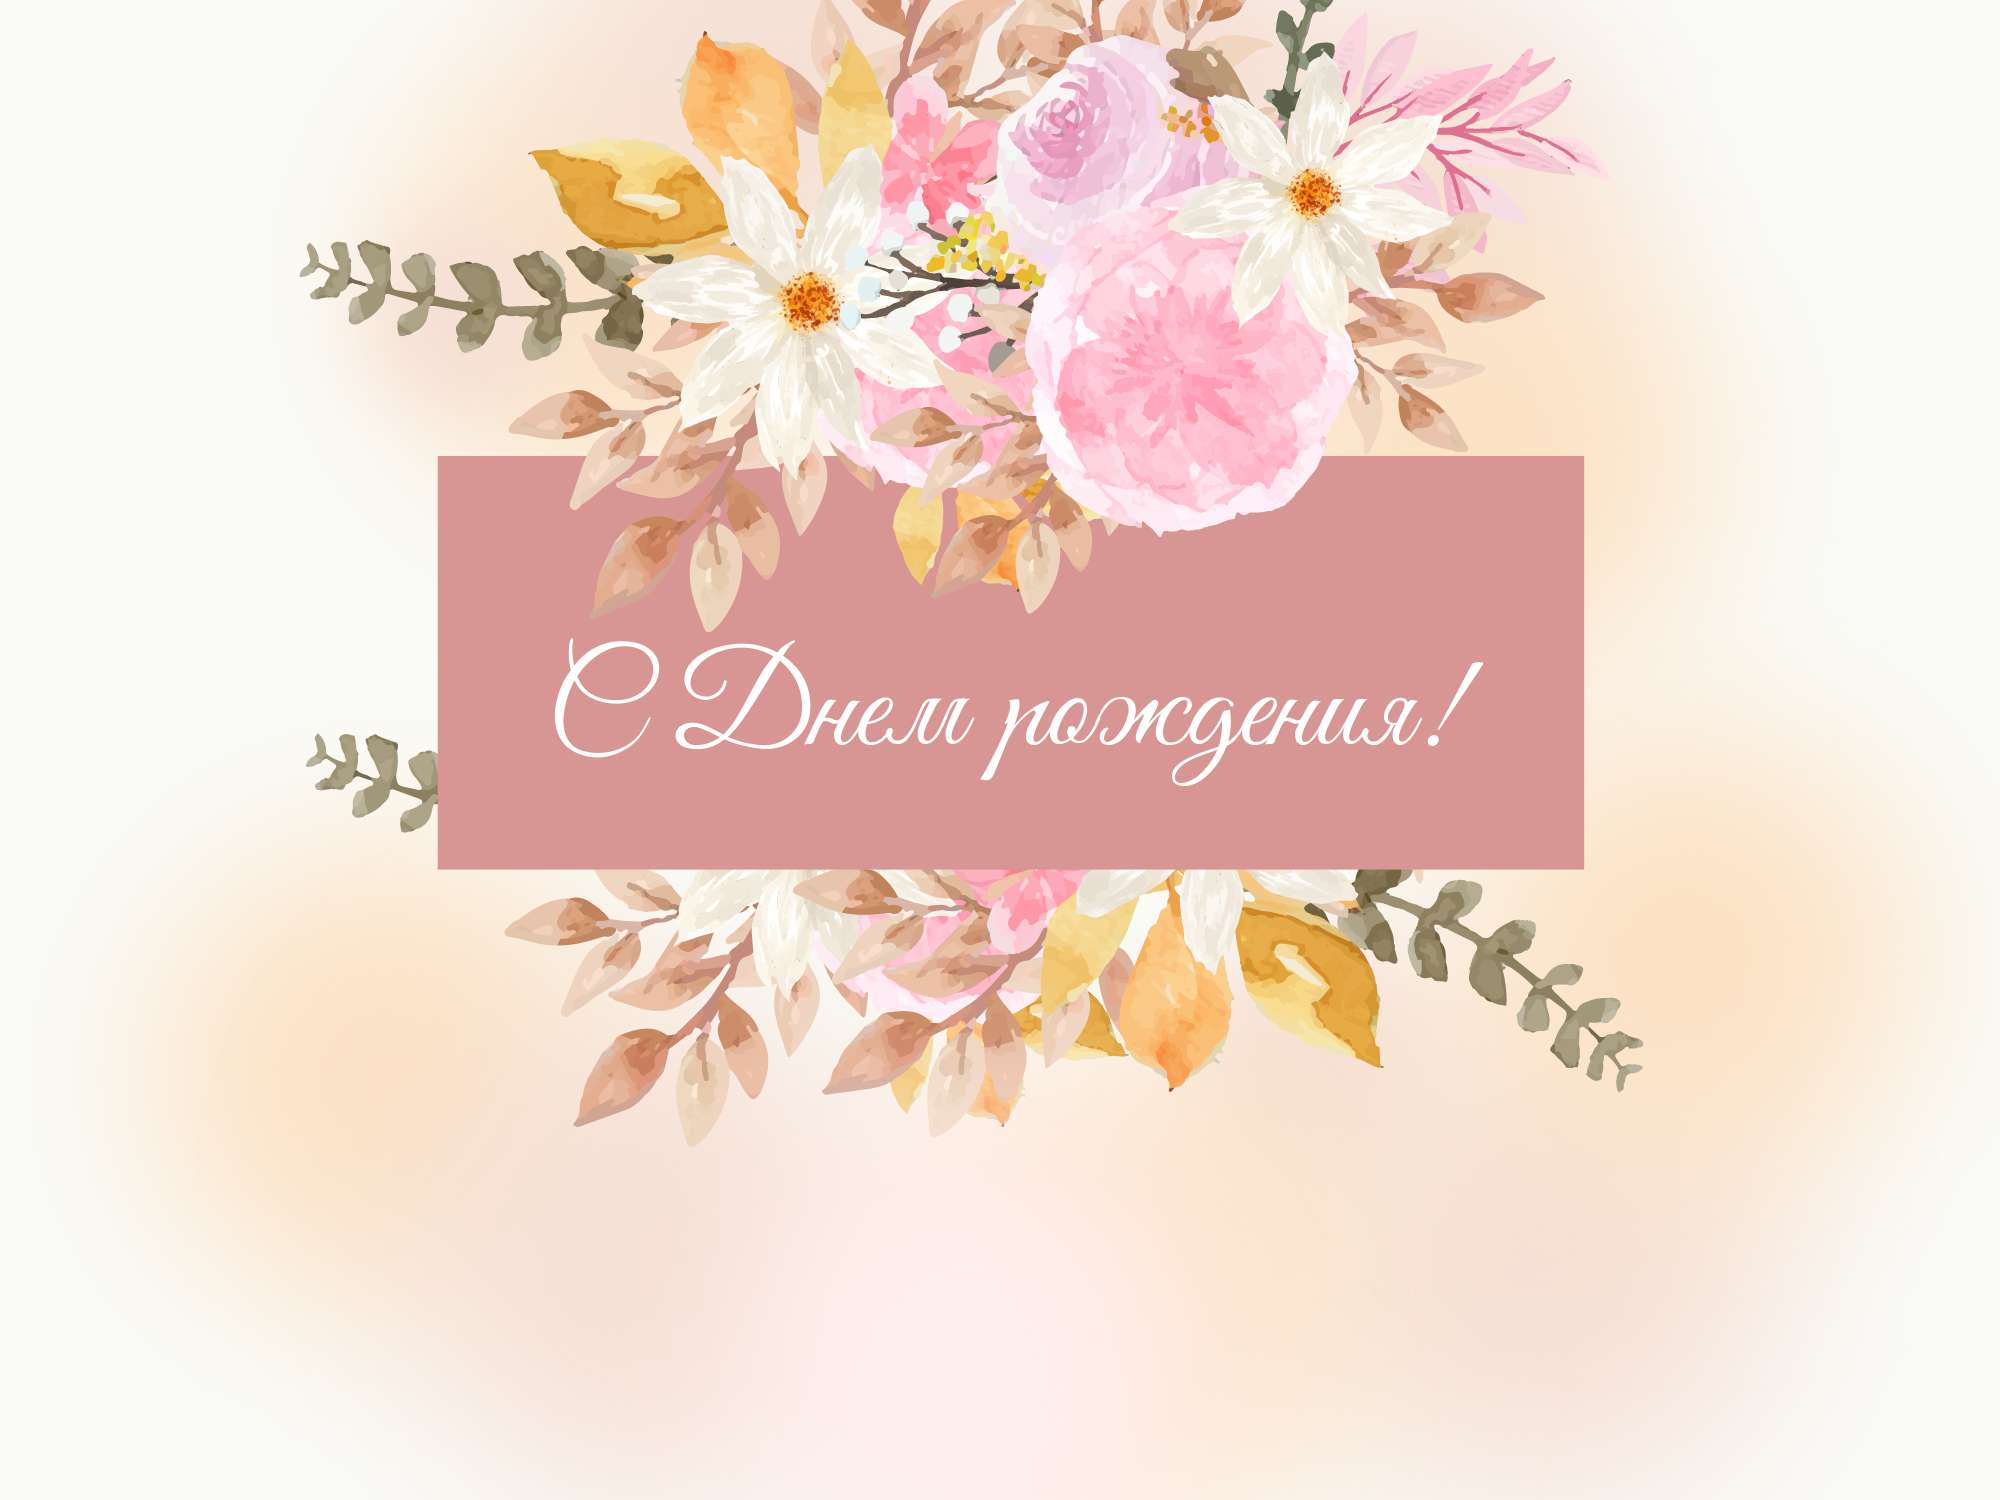 Красивая поздравительная открытка для девушки в нежно-розовых тонах и с пышными букетами цветов